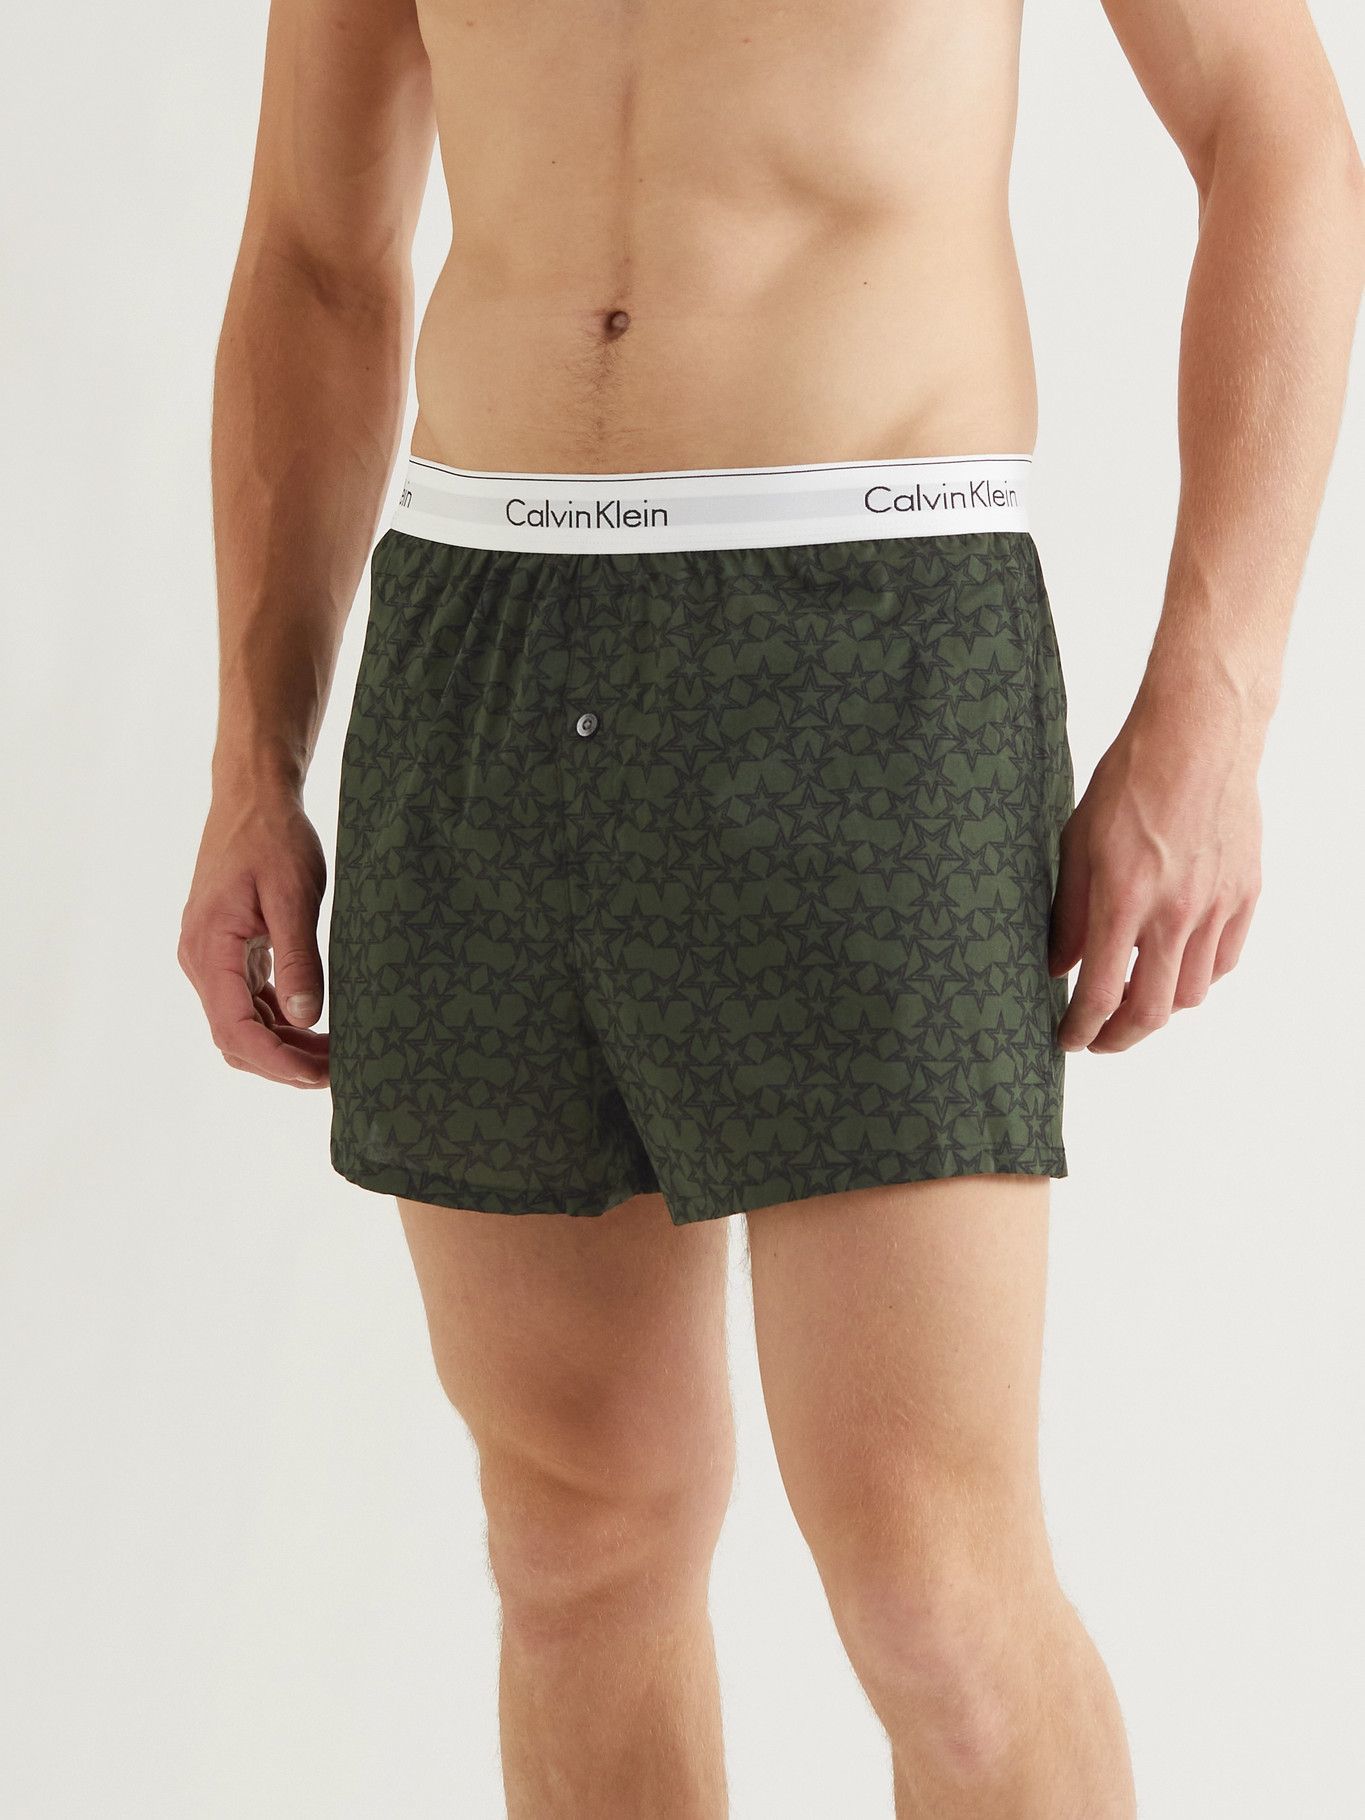 CALVIN KLEIN UNDERWEAR - Two-Pack Slim-Fit Printed Cotton Boxer Shorts -  Black Calvin Klein Underwear